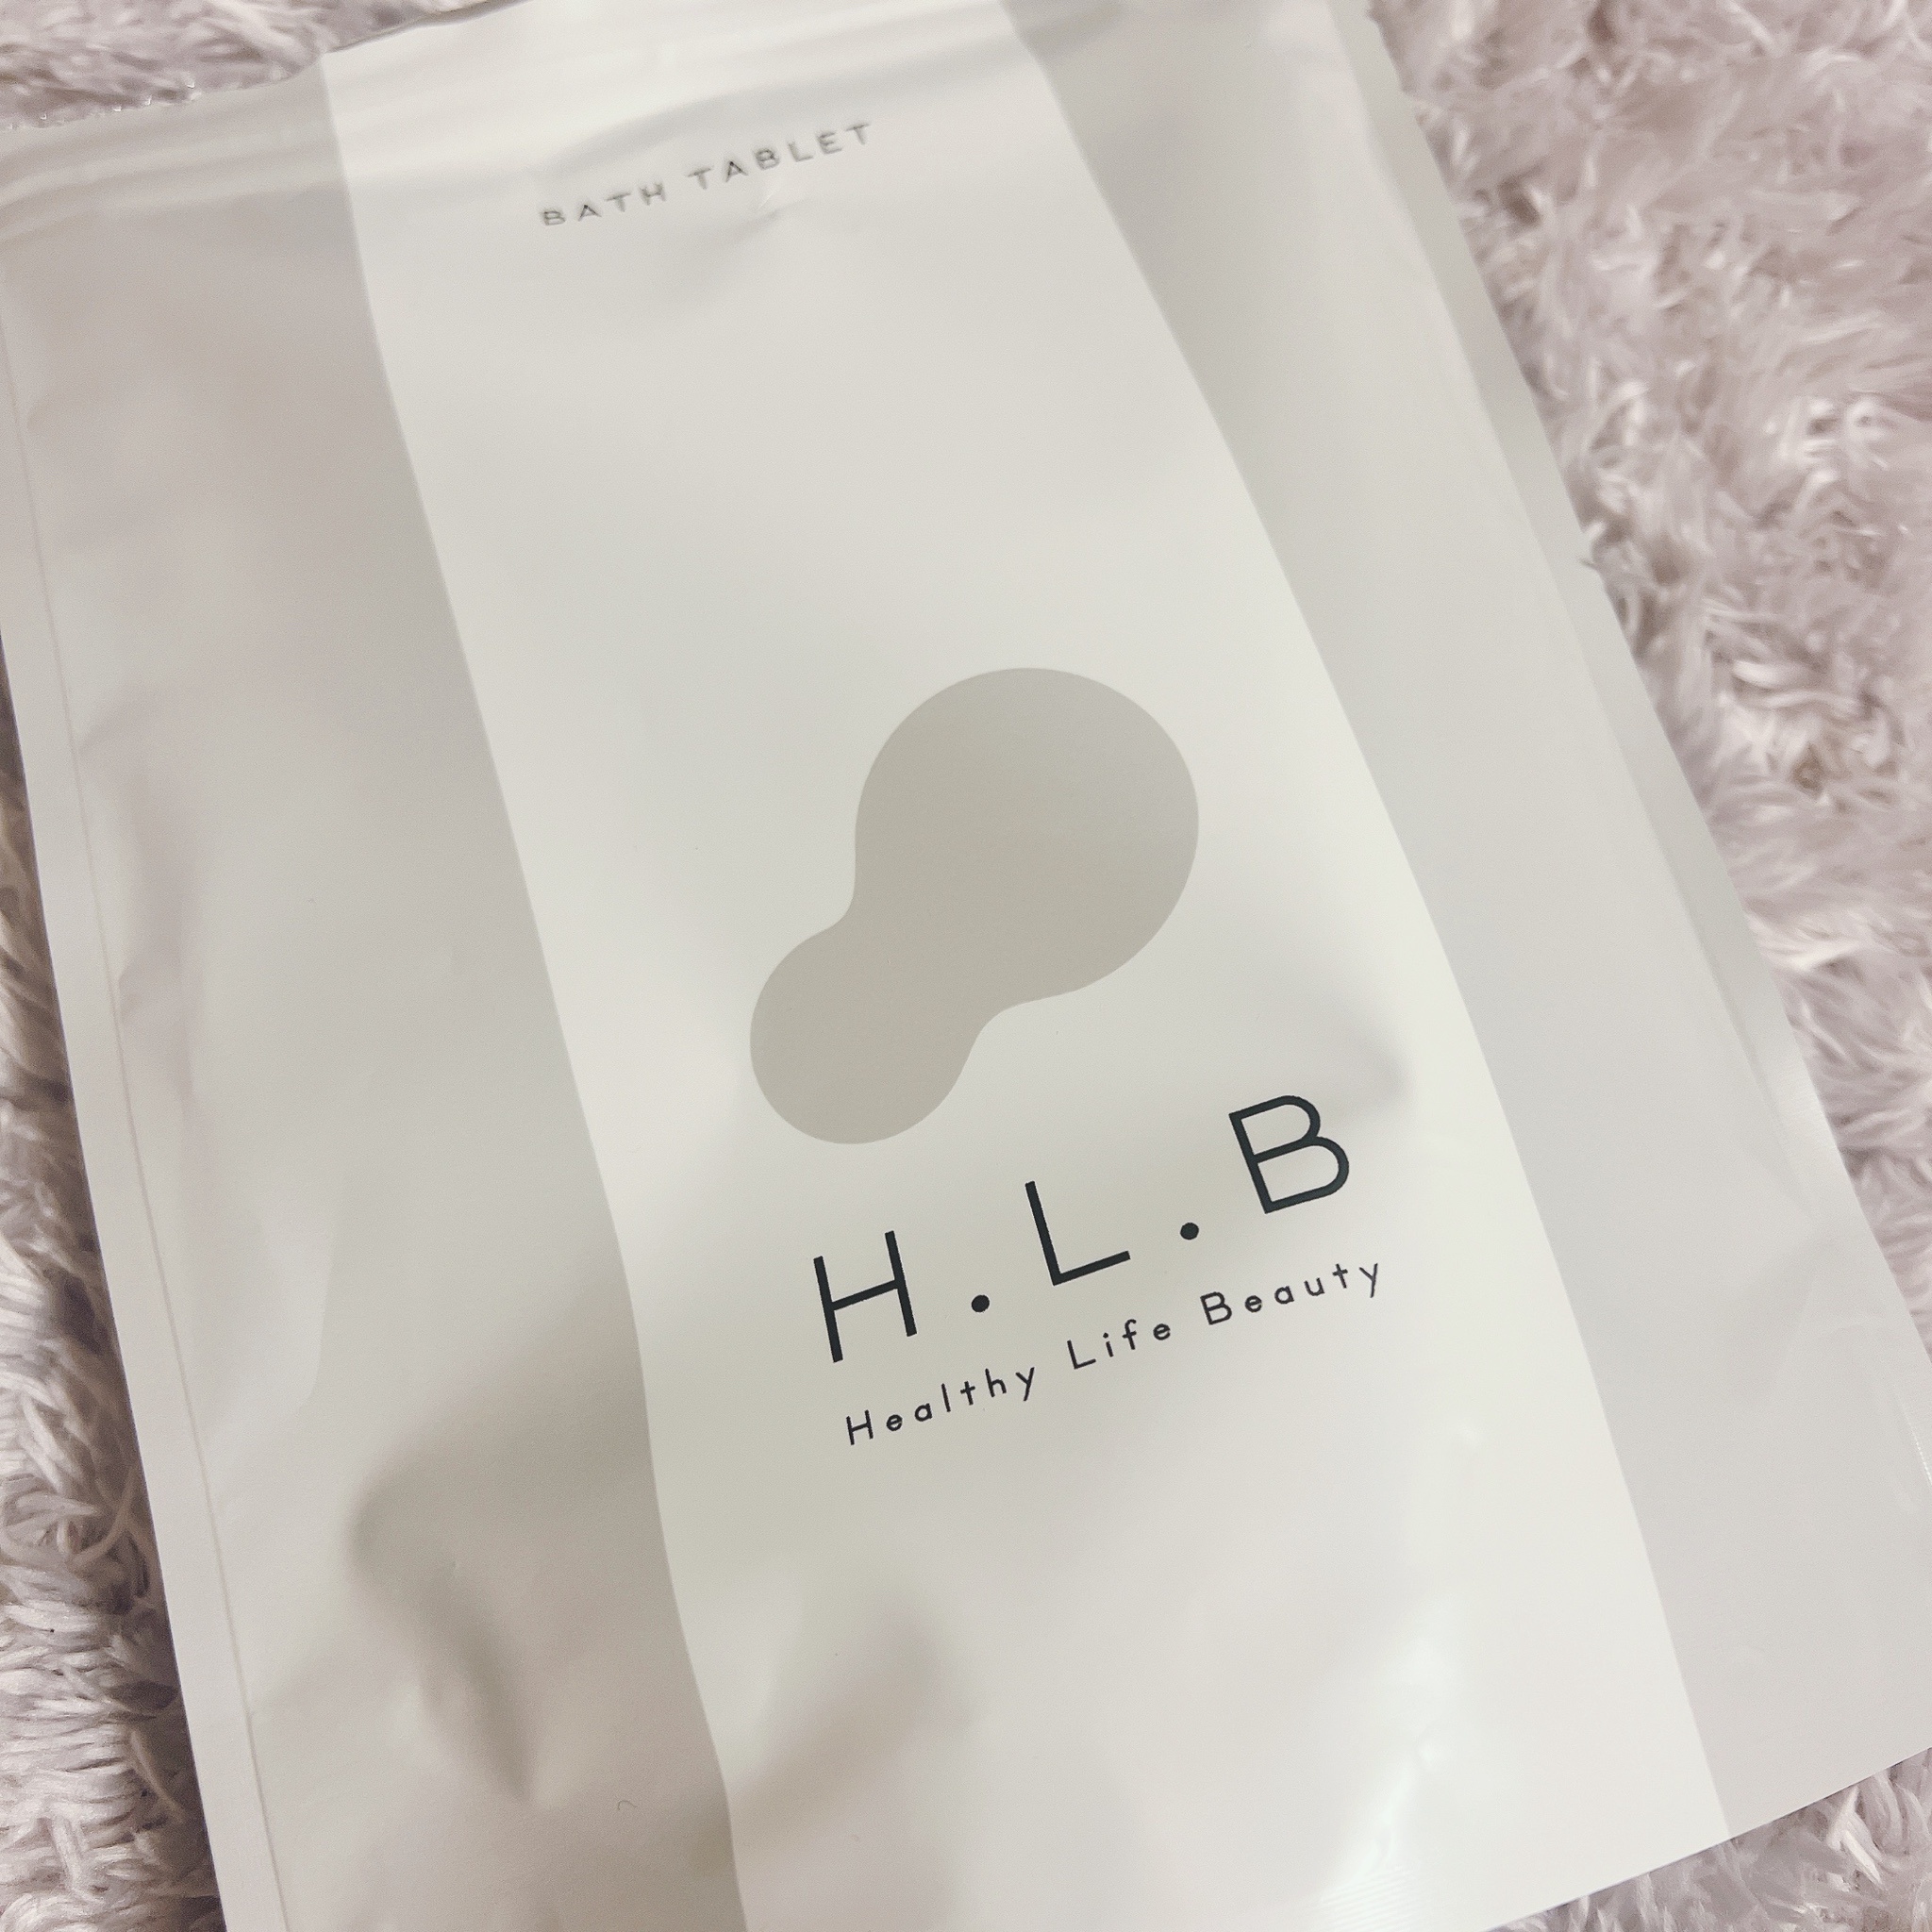 H.L.B バスタブレット 20錠 BATH TABLET hlb入浴剤 - 入浴剤・バスソルト